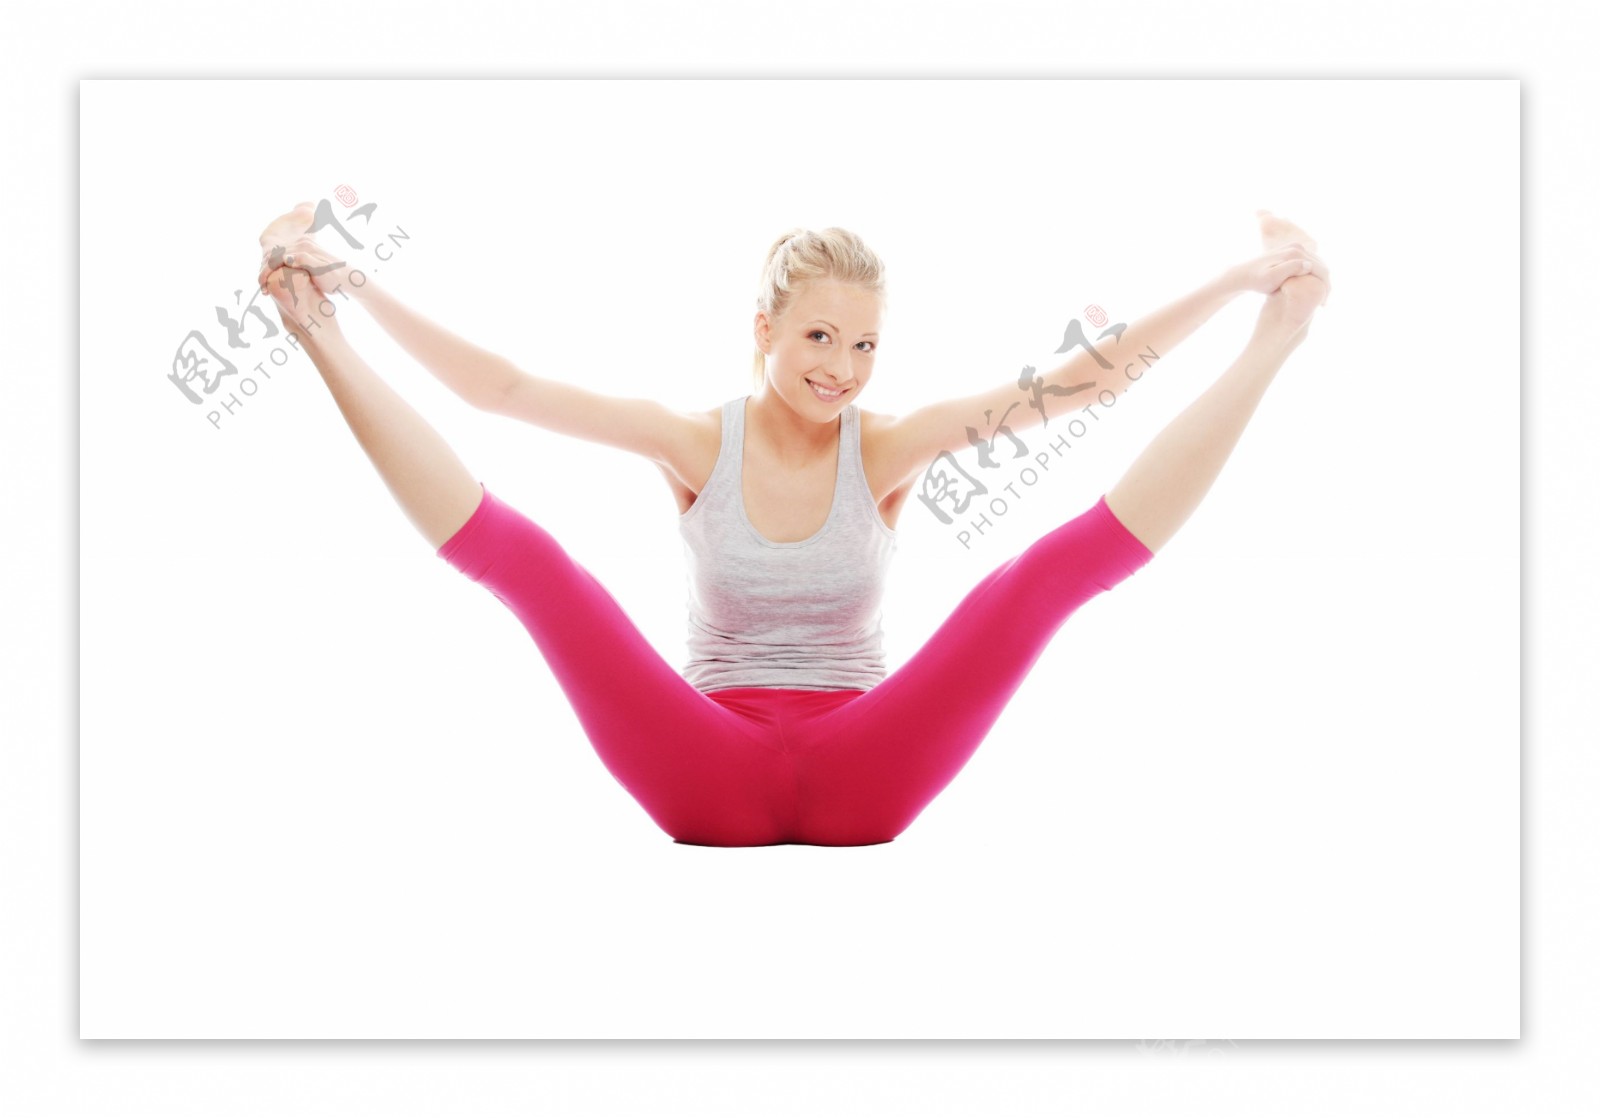 女孩的劈腿体操运动员 库存照片. 图片 包括有 舞蹈演员, 舞蹈, 家庭, 生活方式, 执行, 体育运动 - 160470920